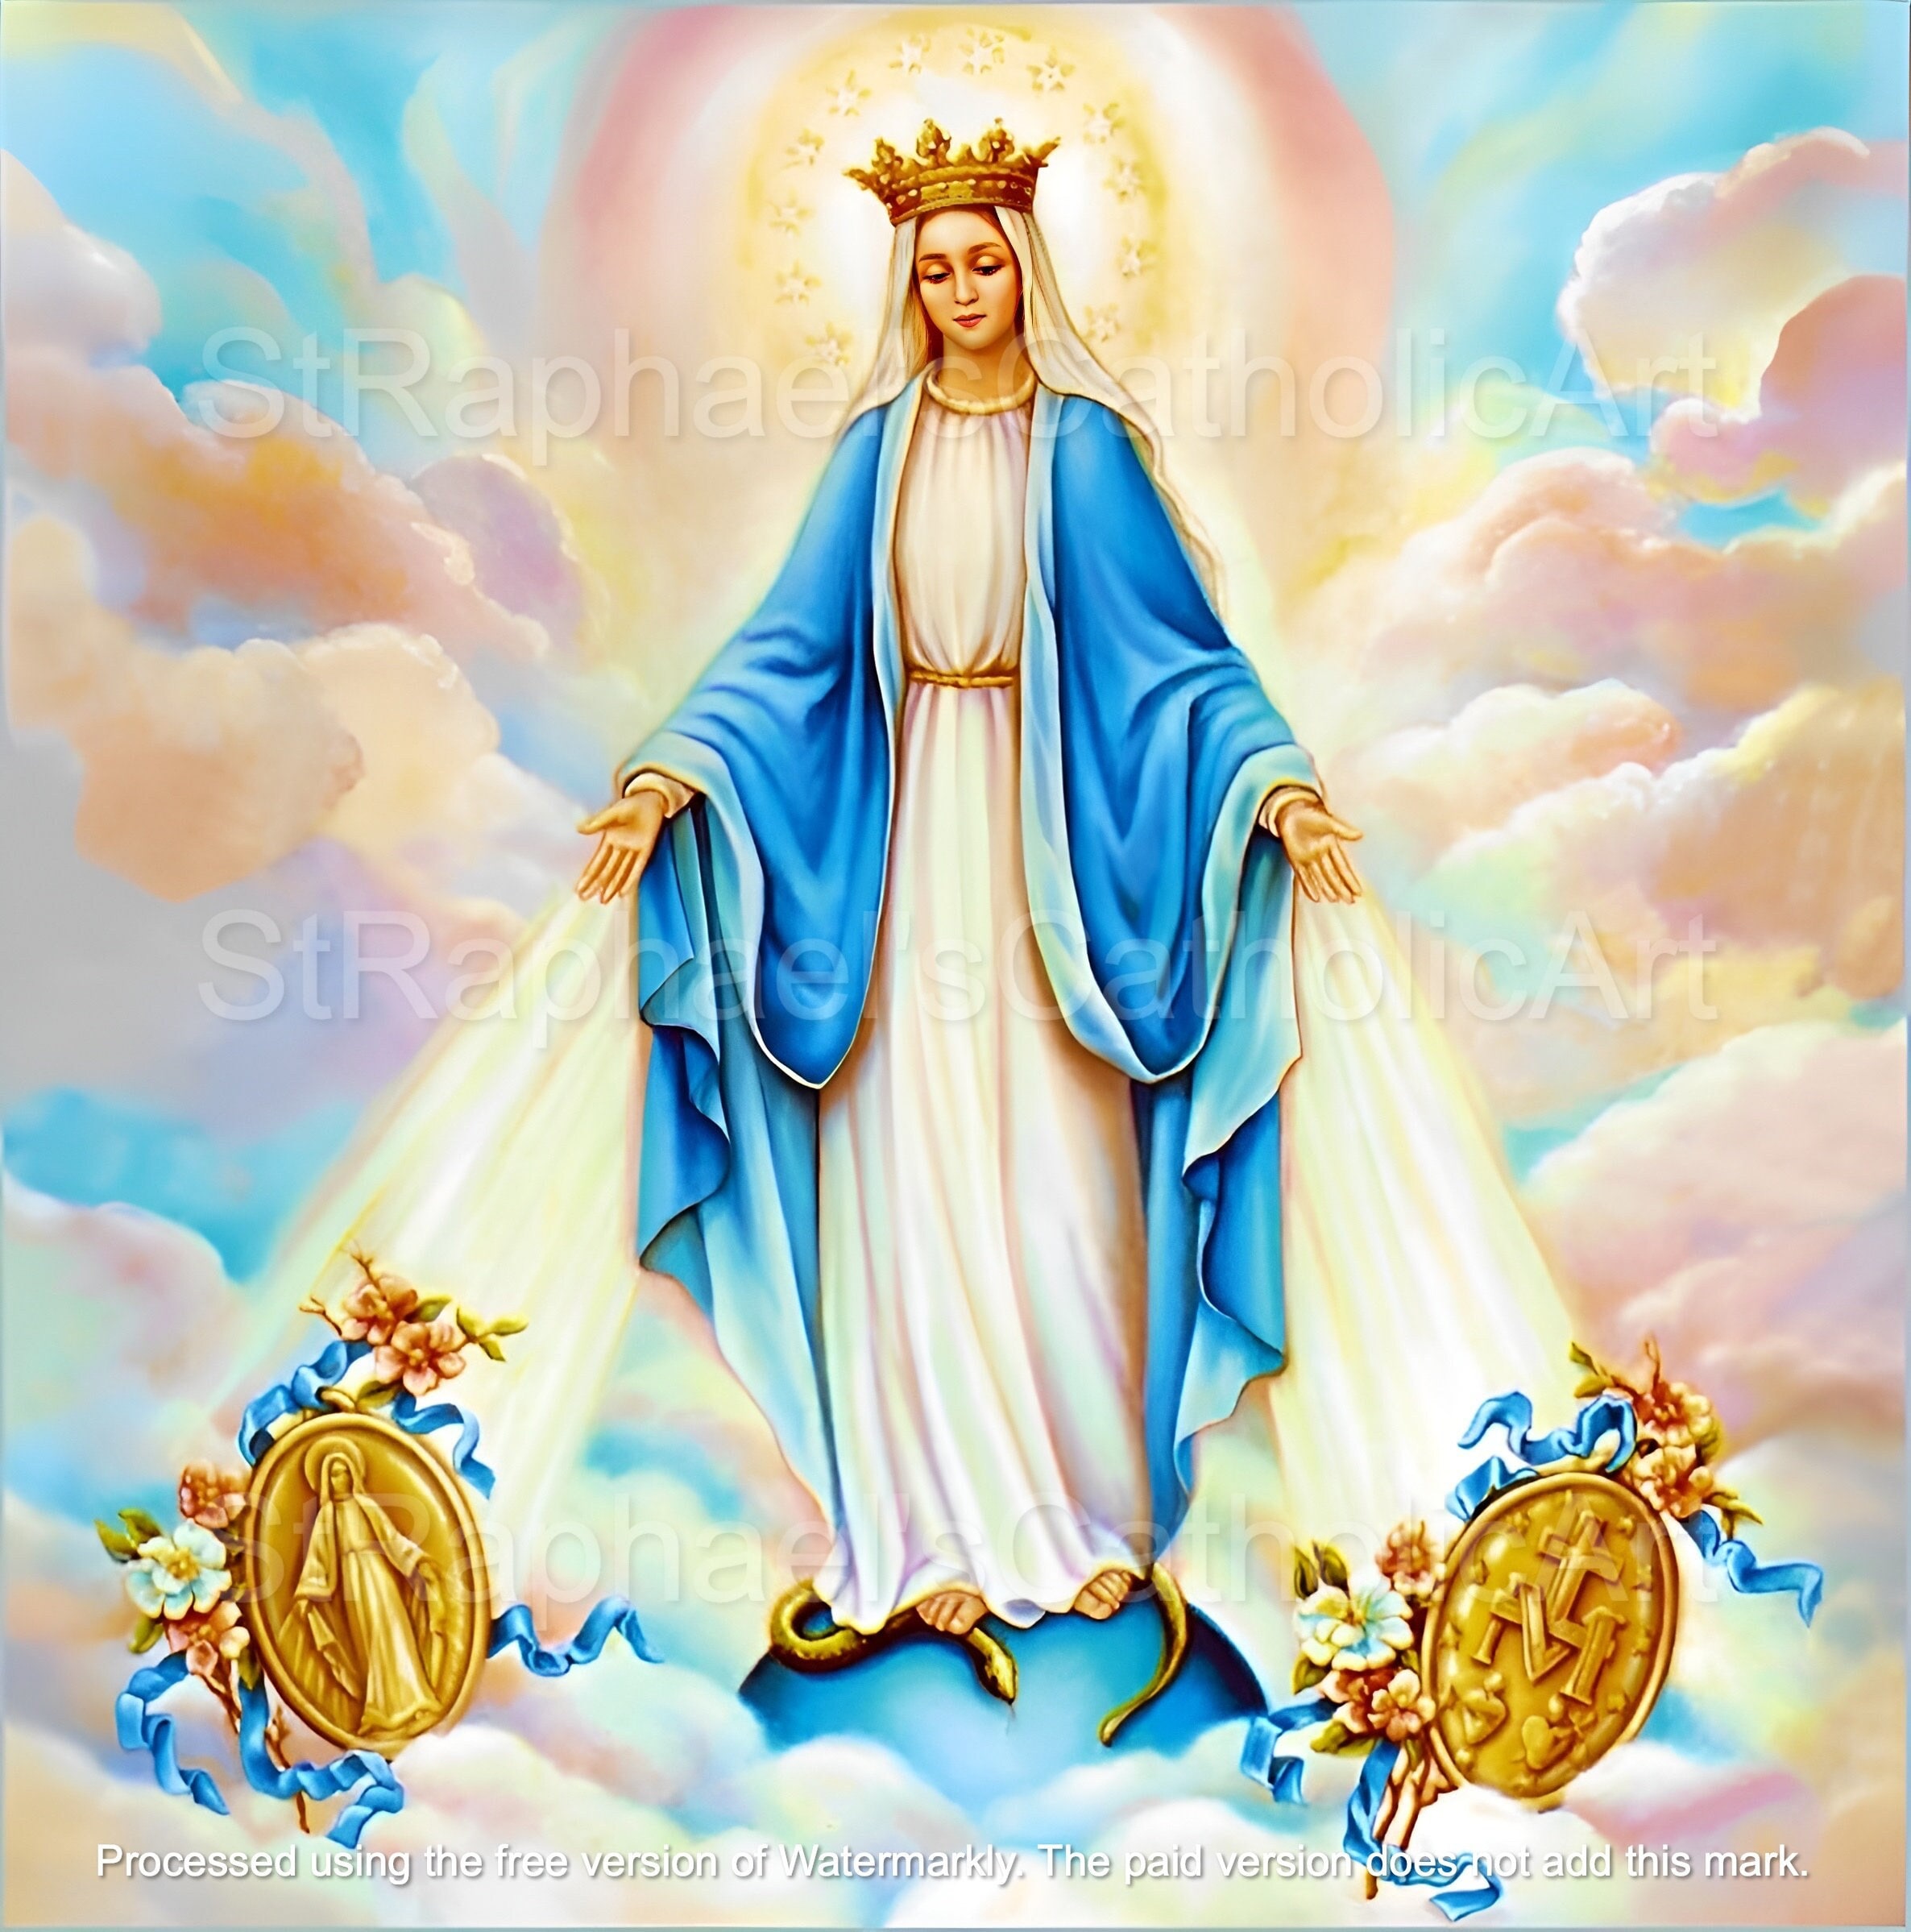  Estatua de medallas milagrosas Virgen María La Virgen Milagrosa  de 18 pulgadas Estatua de Medallas Milagrosas Regalo religioso : Hogar y  Cocina